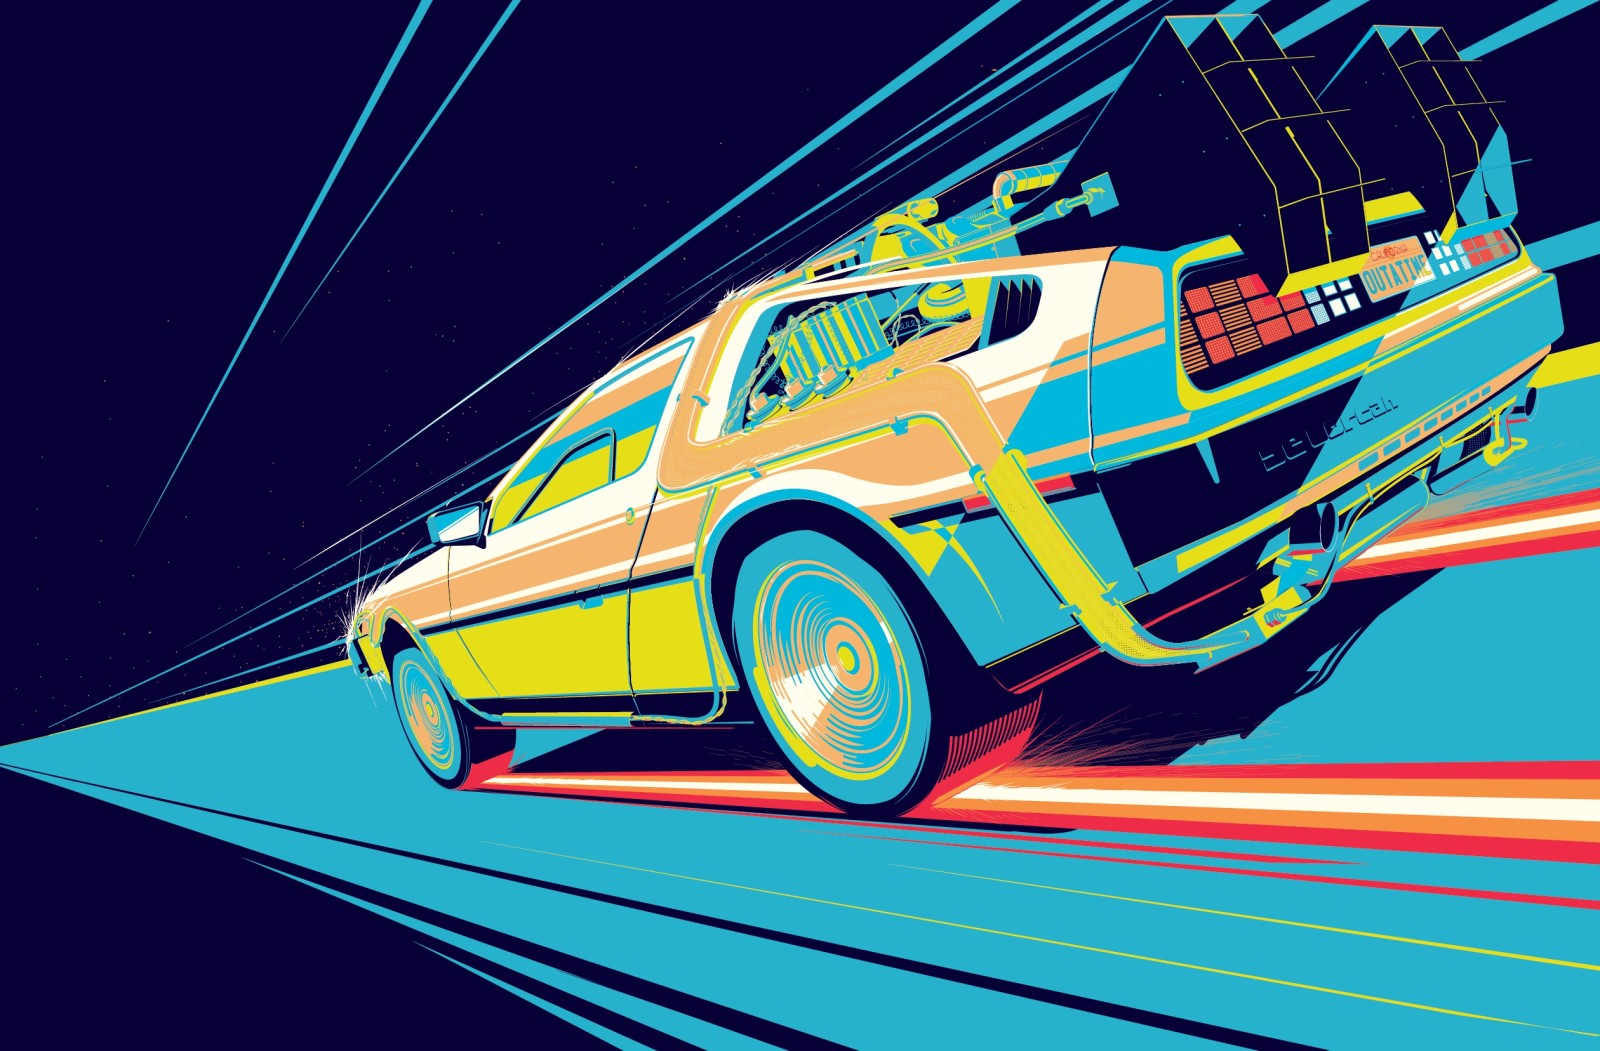 รถยนต์, รูป, เครื่อง, เรื่องอ่านเล่น, ภาพยนตร์, กลับไปสู่อนาคต, DeLorean, DeLorean DMC-12